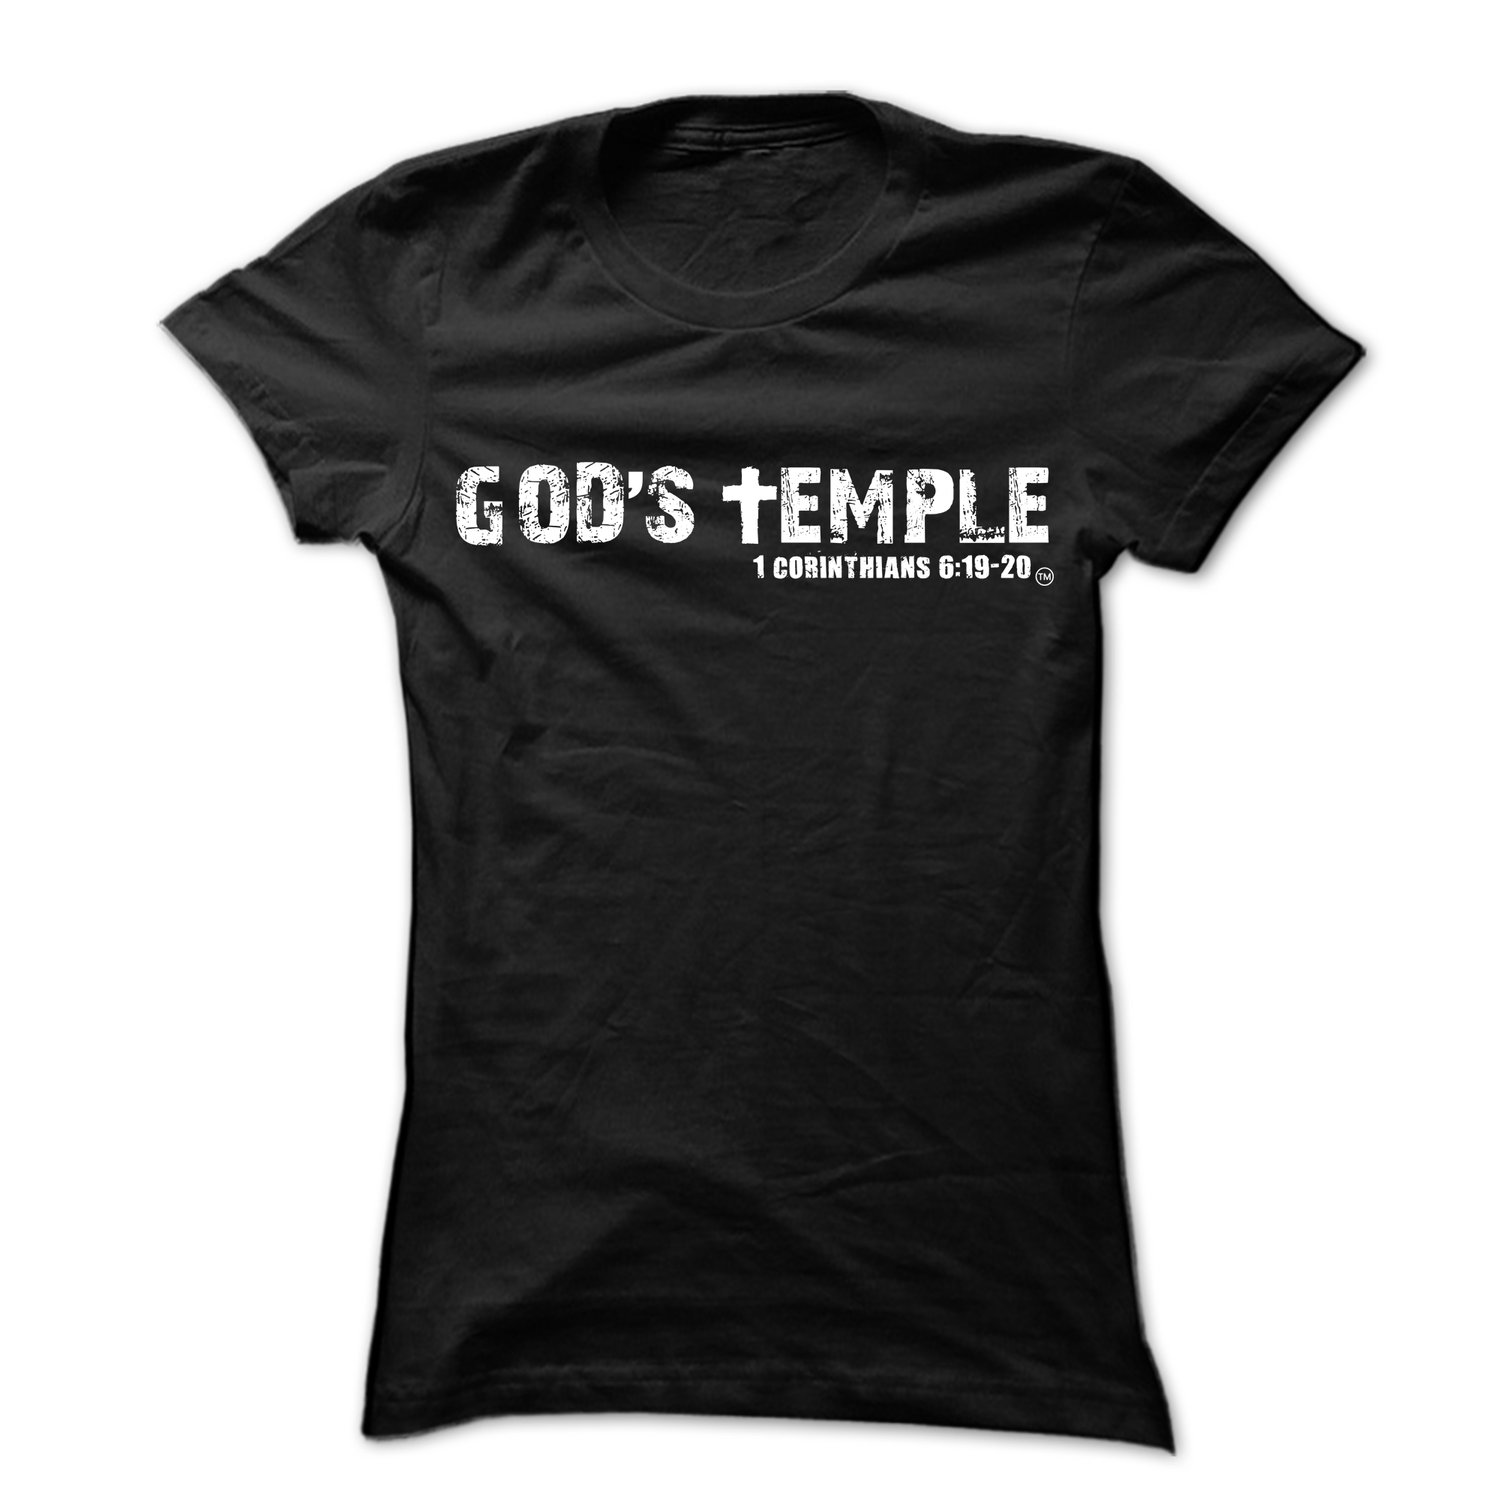 Image of Black "God's Temple" Unisex Tee